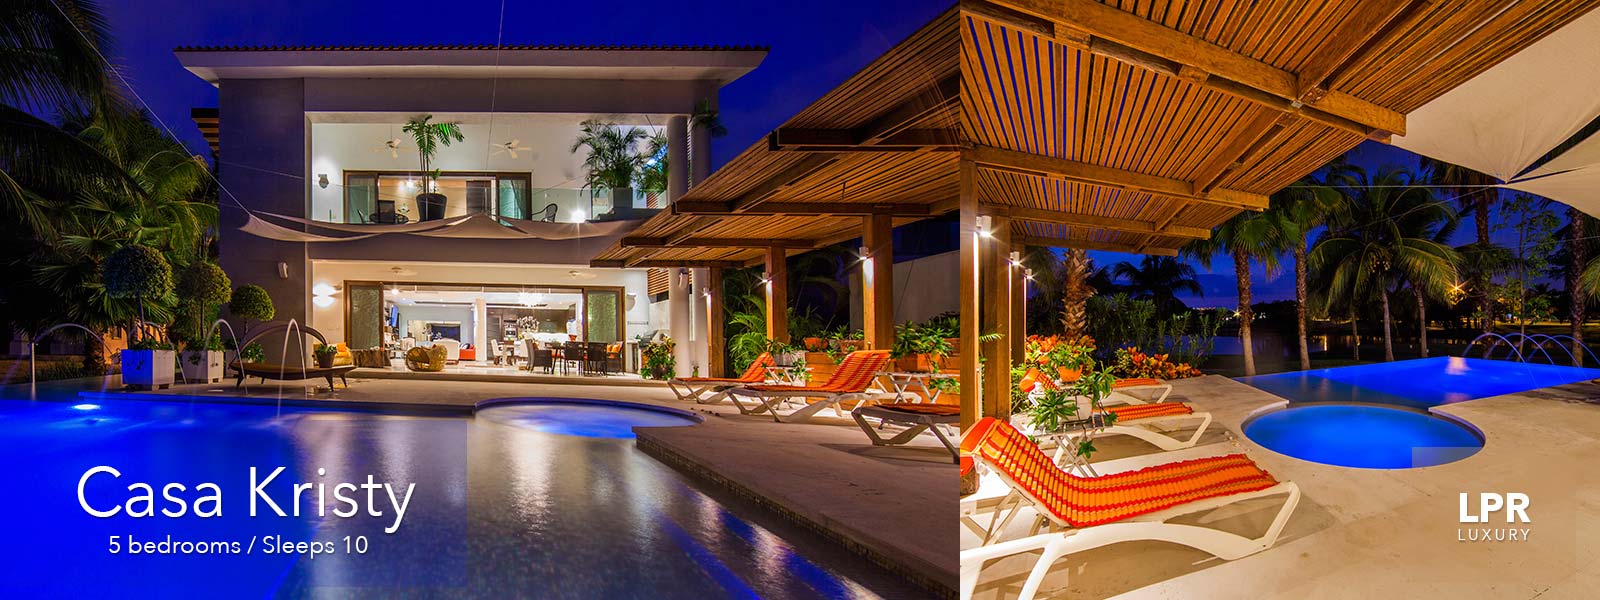 Casa Kristy - On the fairways of El Tigre - Nuevo Vallarta - Puerto Vallarta Luxury Real Estate